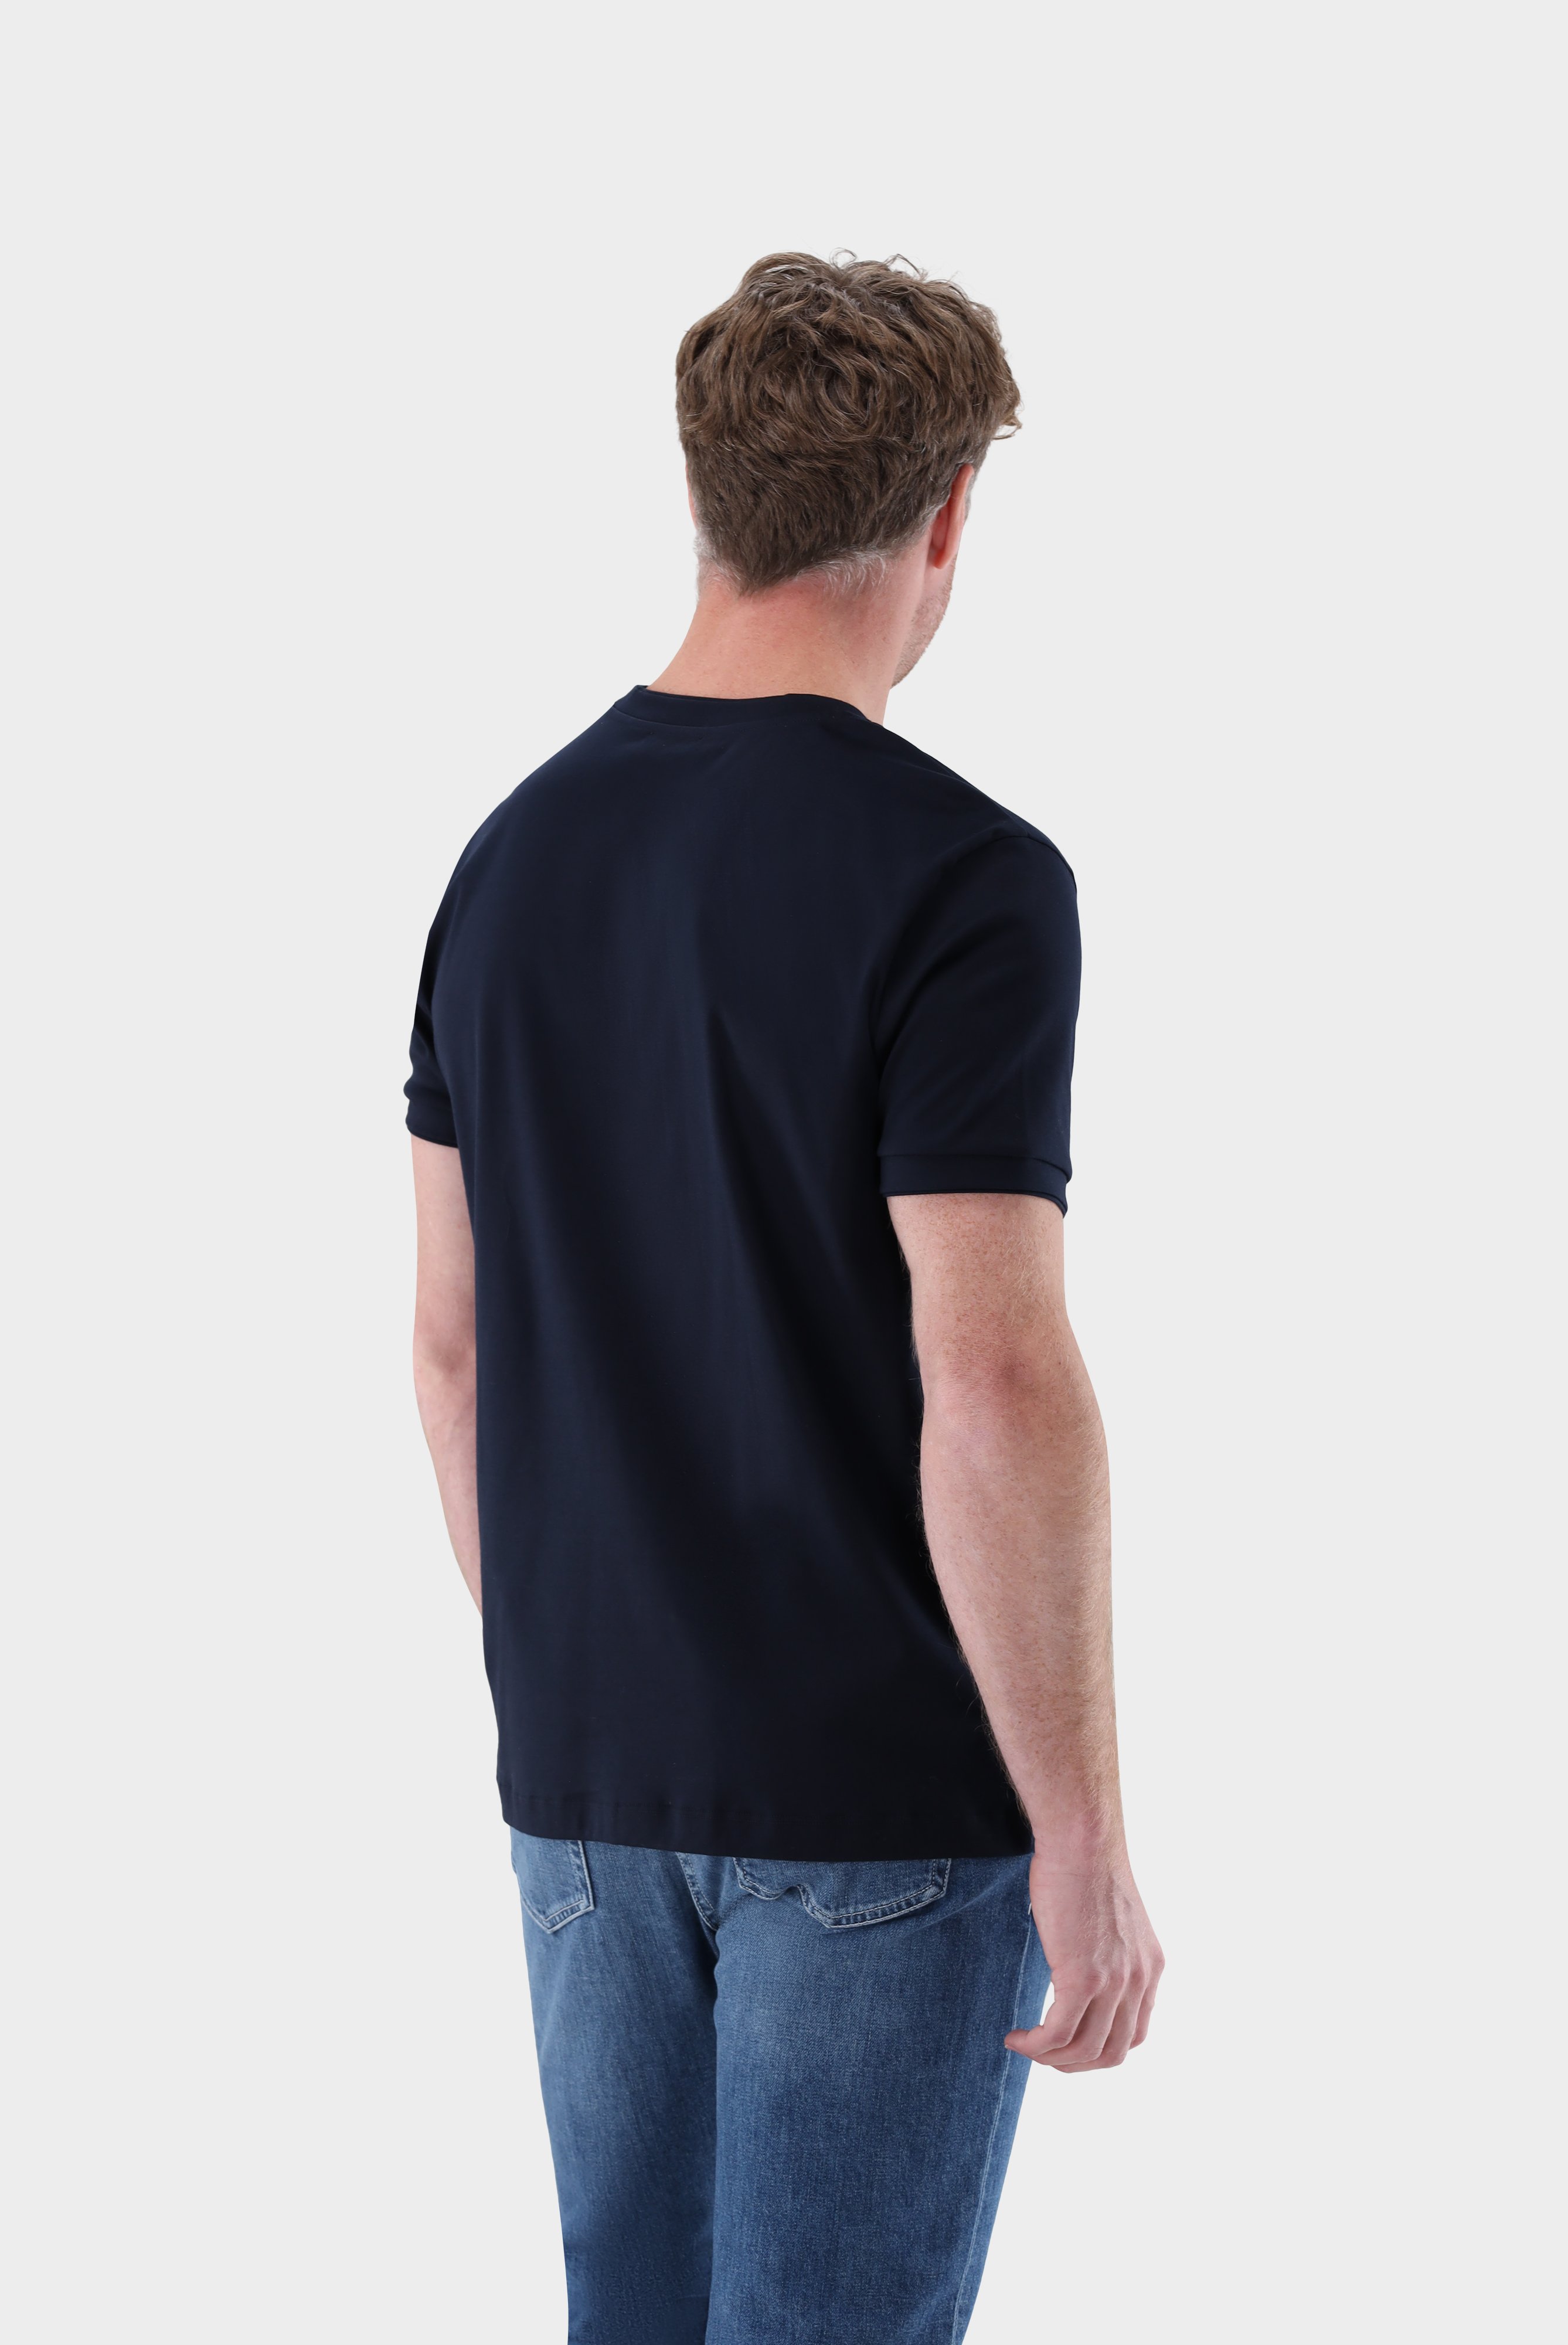 T-Shirts+T-Shirt mit Paspel Details+20.1673.U2.180053.790.XS